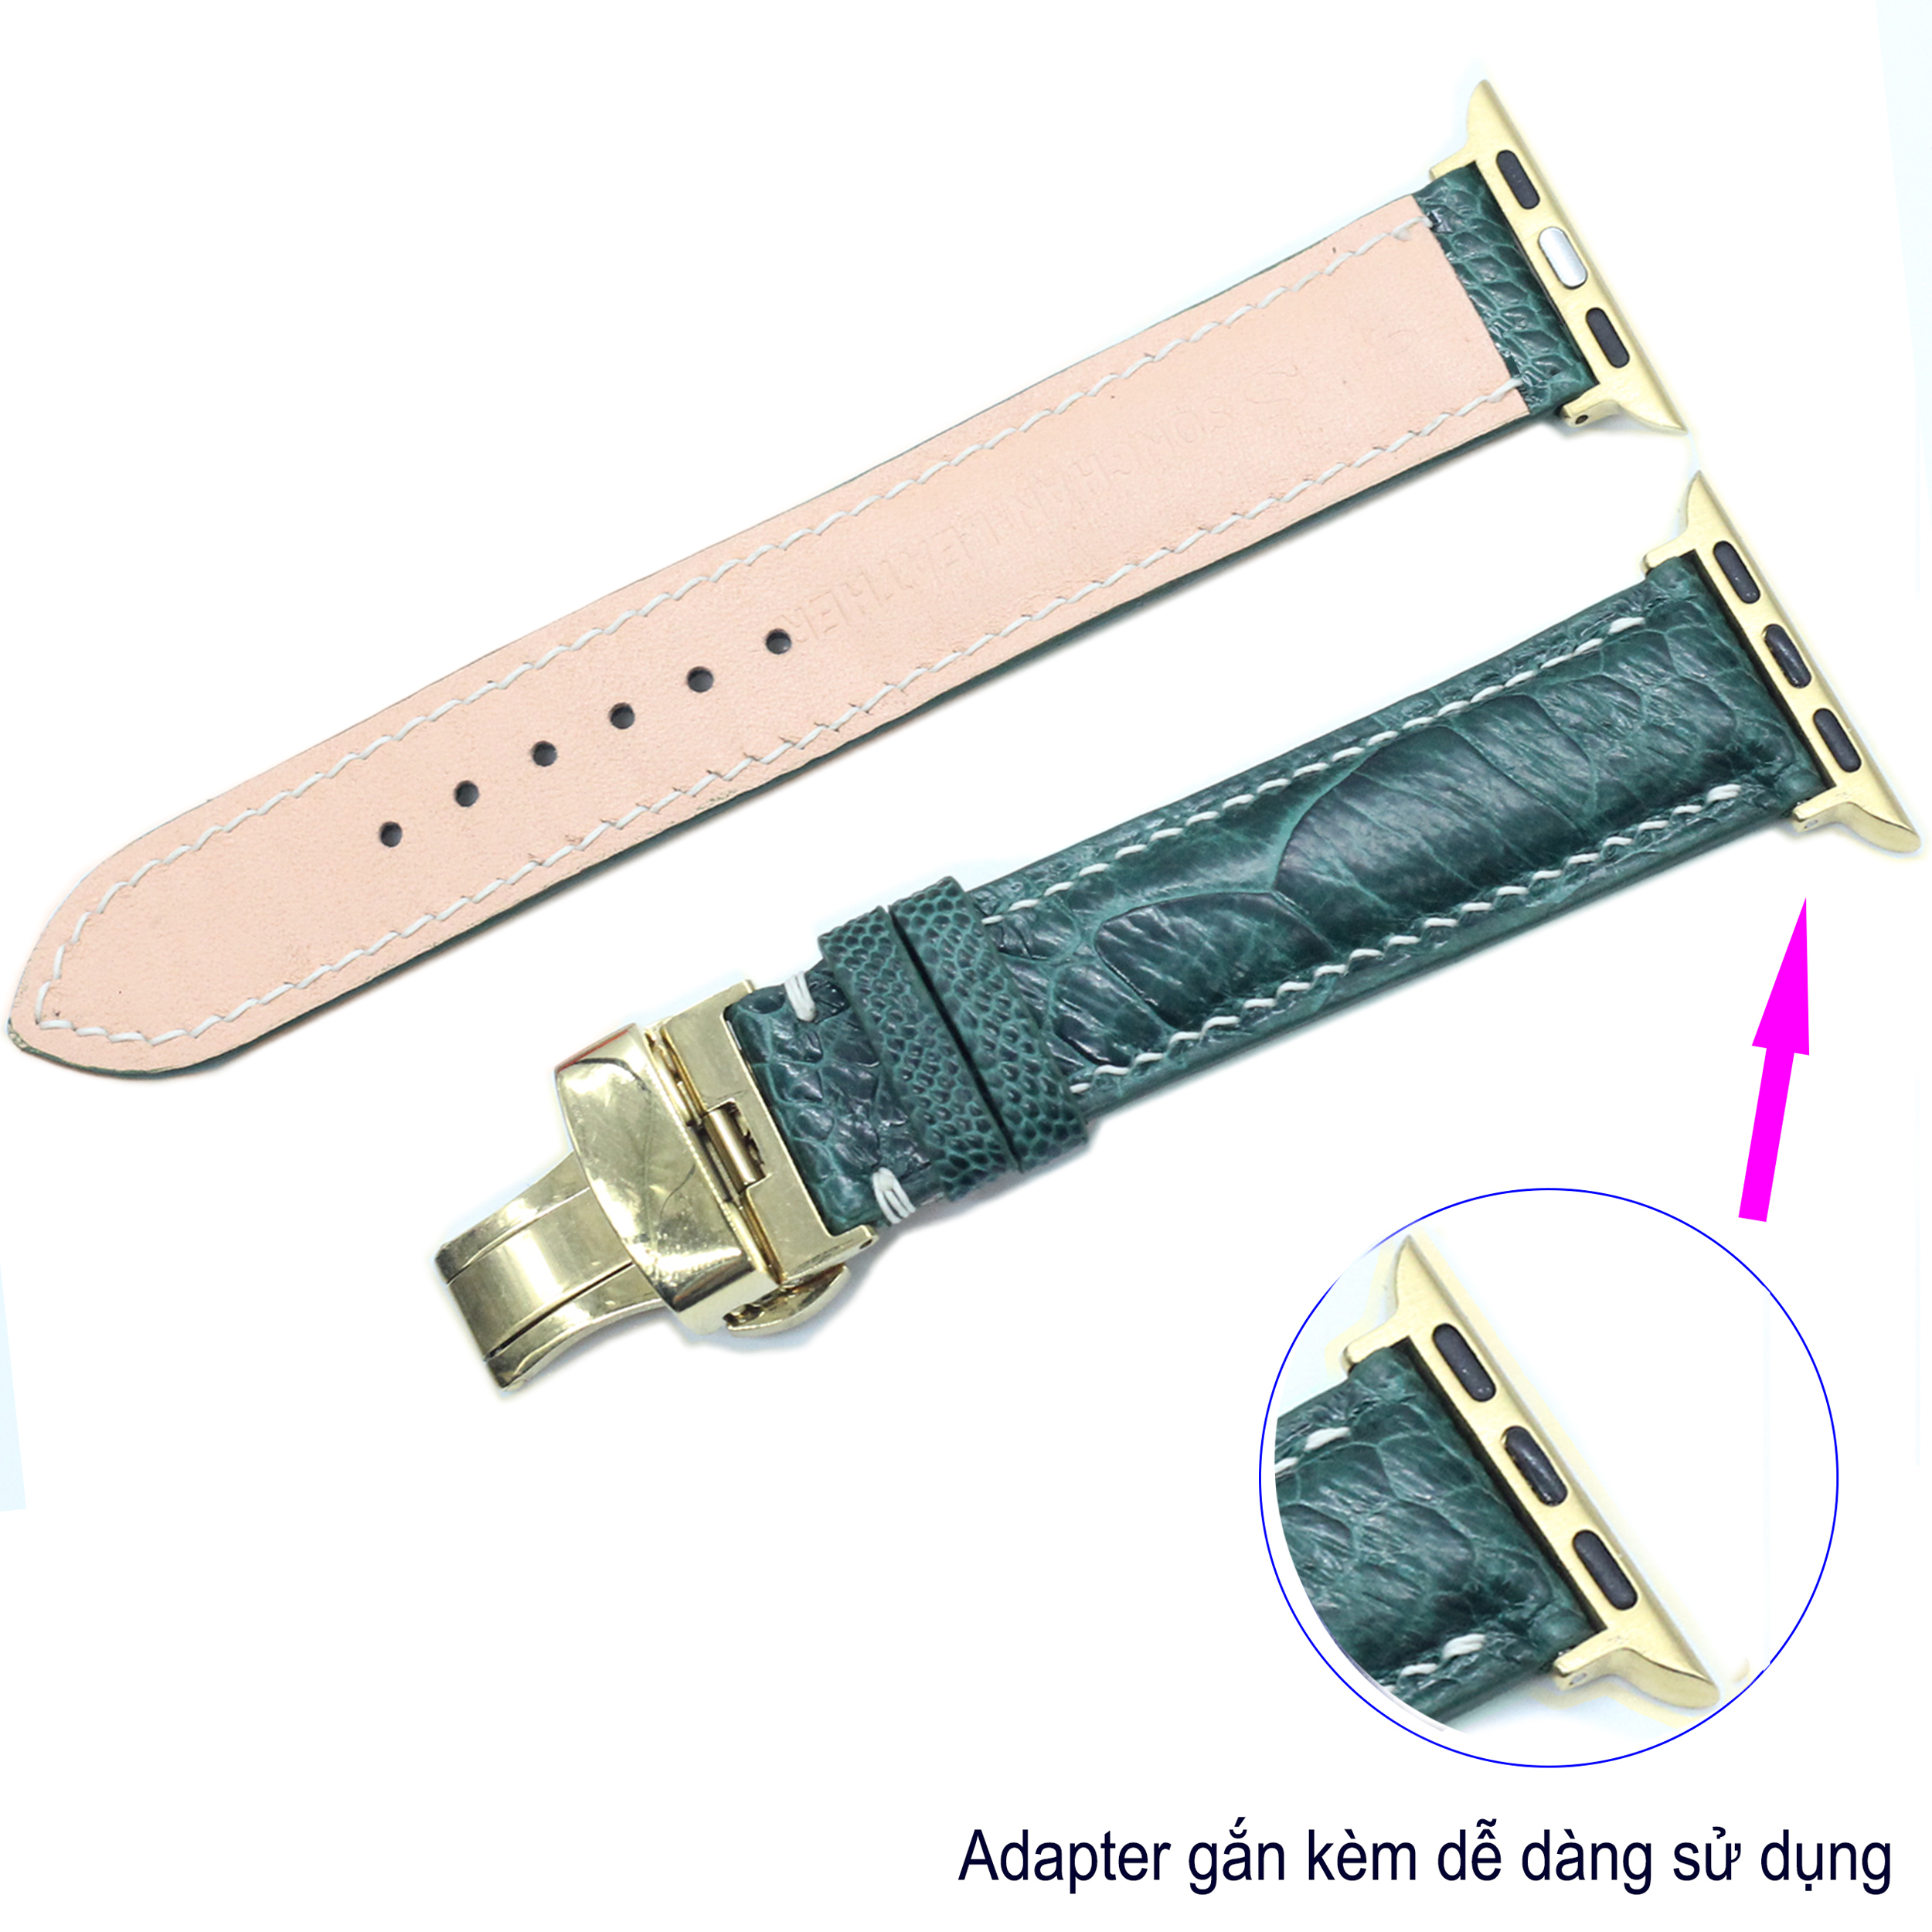 Dây Đeo Thay Thế Dành Cho Apple Watch Da Đà Điểu Vân To Khóa Gập Hoàn Thiện Thủ Công, Dây Da Apple Watch Series 2,3,4,5,6,7 Size 38mm,40mm,41mm,42mm,44mm,45mm Hàng Chính Hãng Songhan Leather